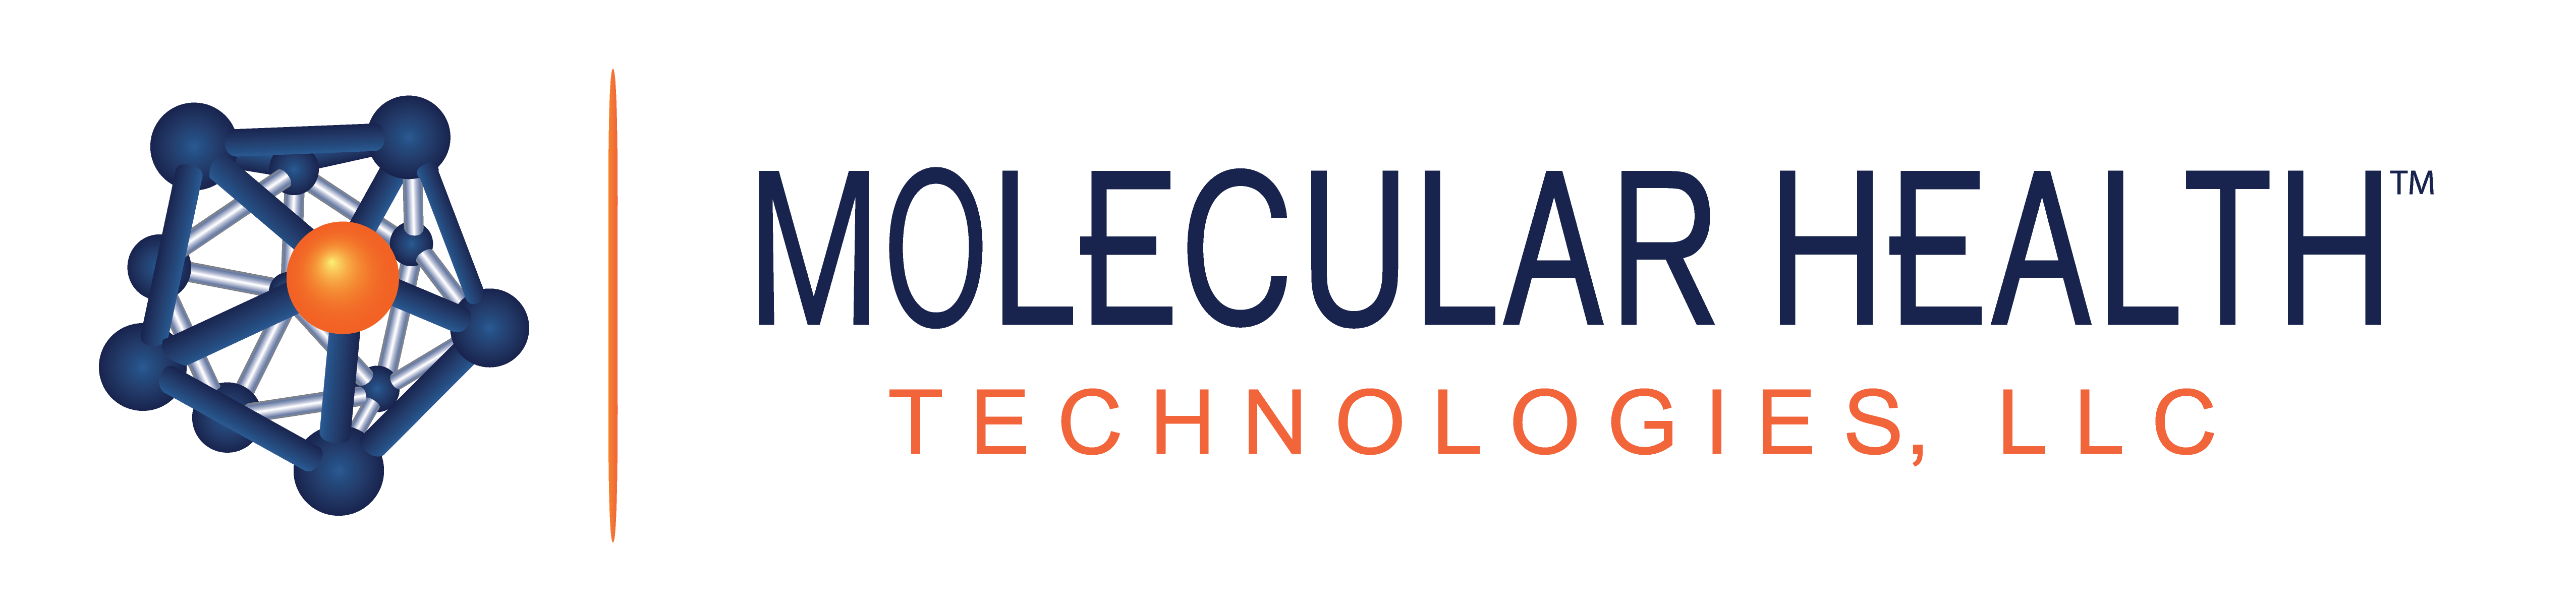 Molecular health technologies, LLC